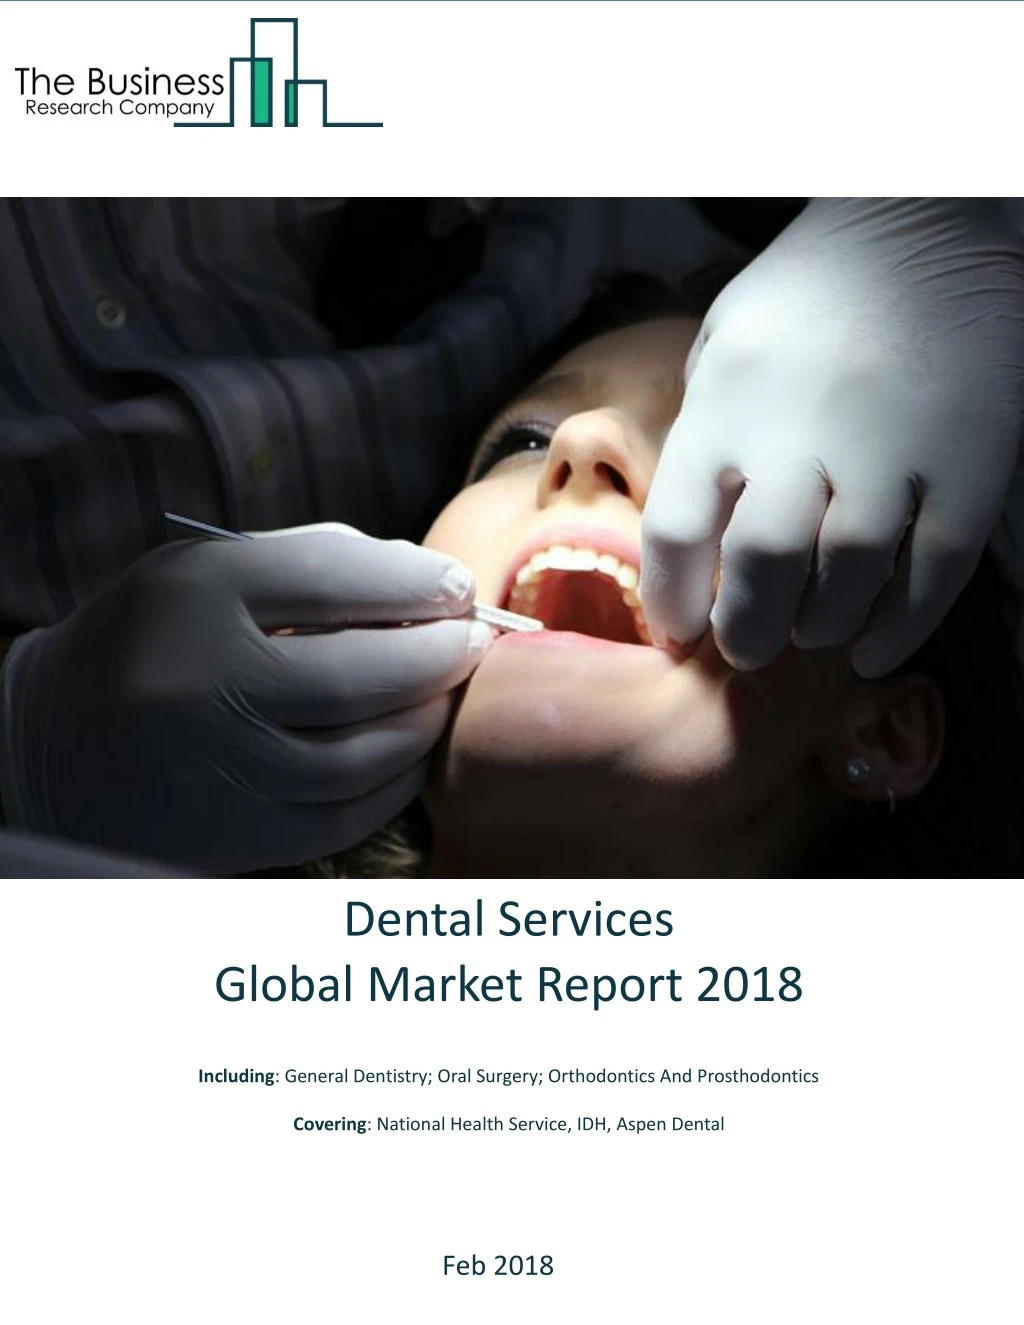 dental services global market report 2018